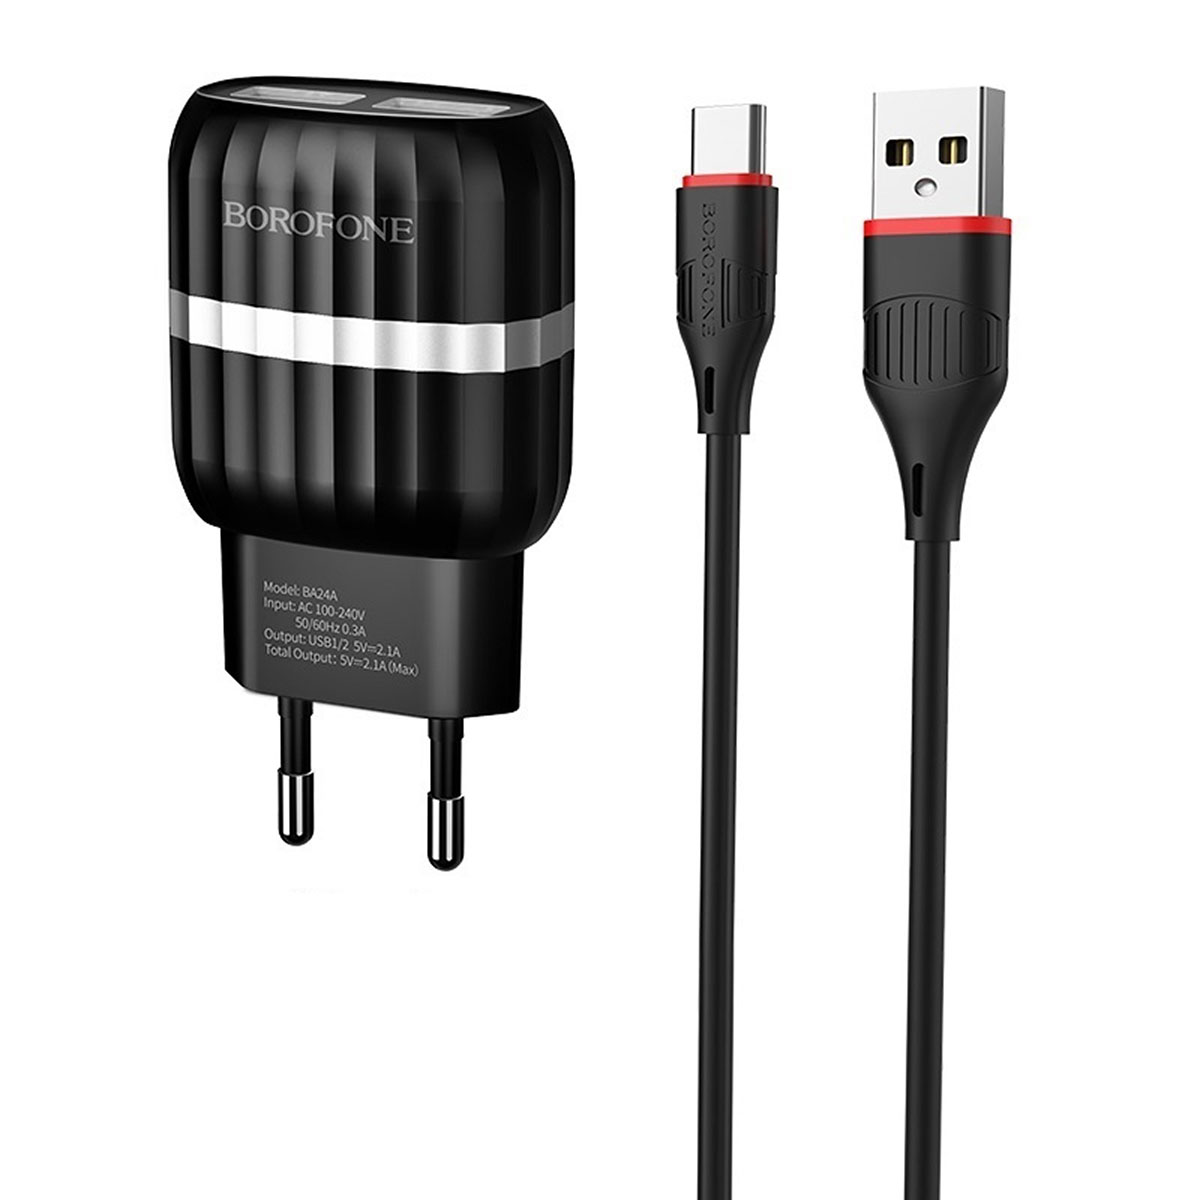 BOROFONE BA24A Vigour СЗУ 2 в 1 (сетевое зарядное устройство 5V-2.1A) + кабель USB-C aka Type-C, длина 1 метр, цвет черный.